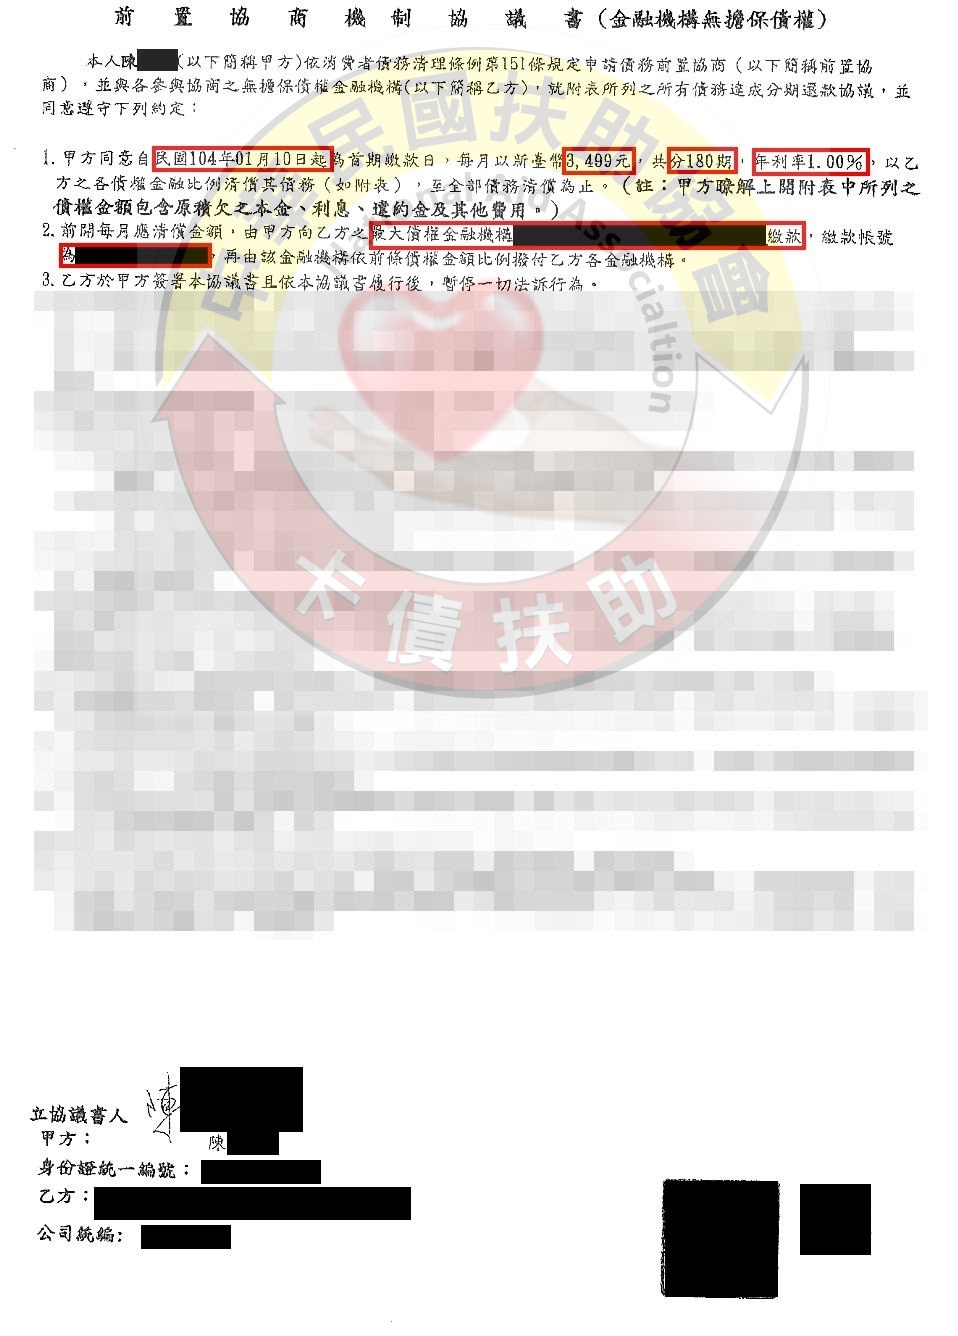 高雄陳小姐-協商成功依180期1%月付3,499元